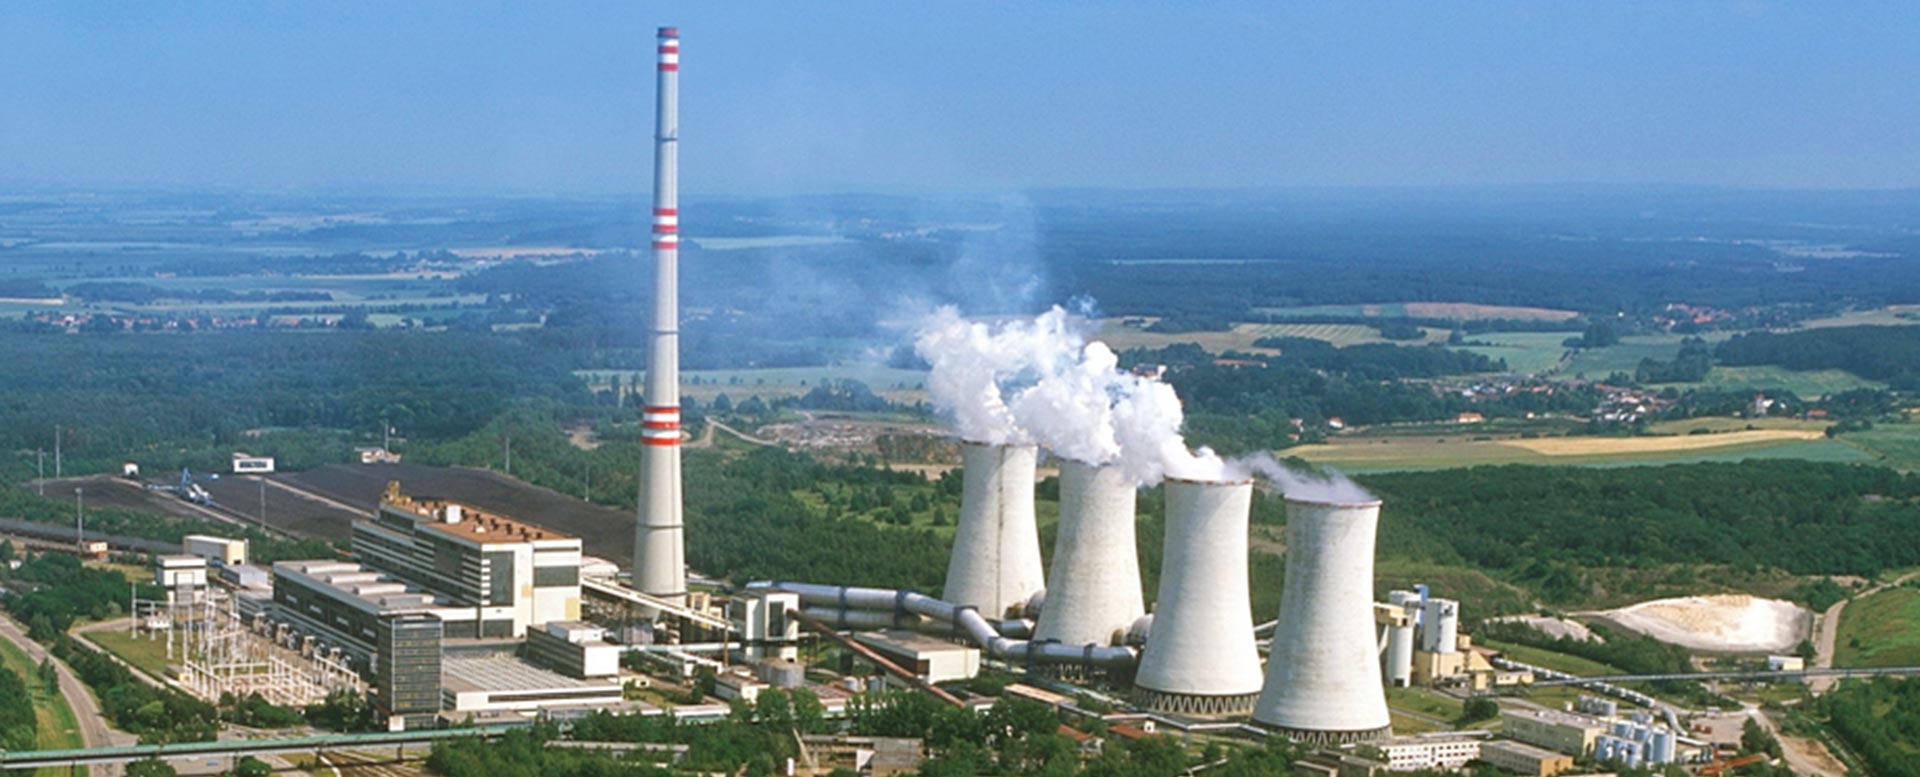 Kdy Česká republika opustí uhlí, je stále otevřená otázka. Uhelná elektrárna Počerady (zdroj ČEZ).